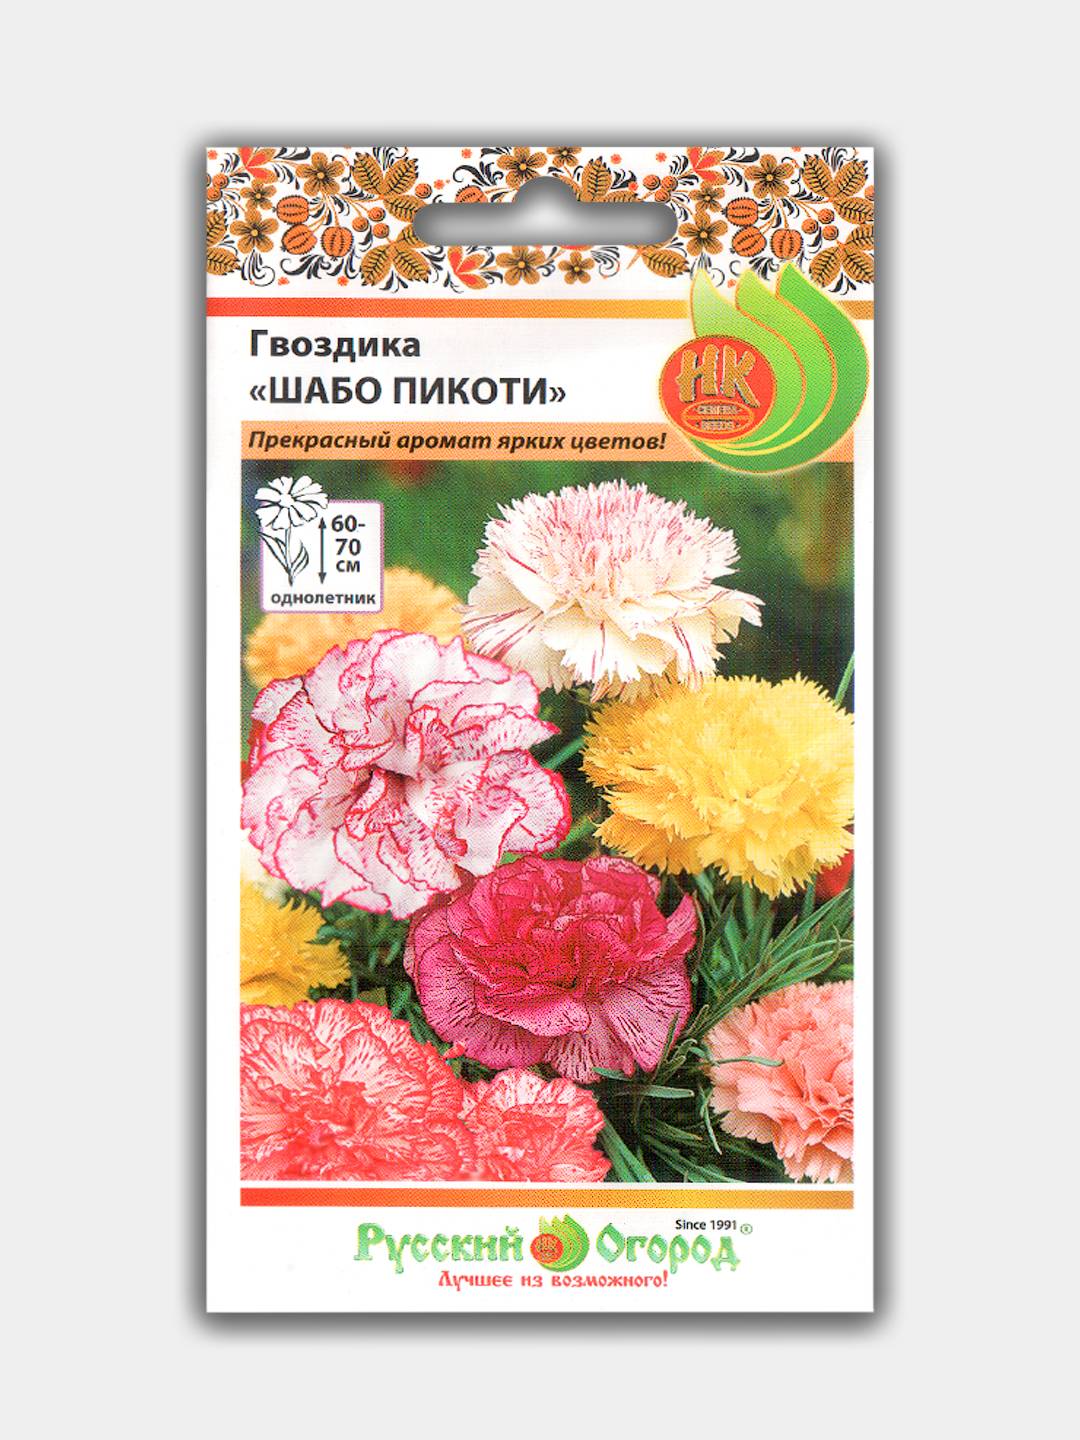  Шабо Пикоти (семена) за 28 ₽ с бесплатной доставкой за 1 день .